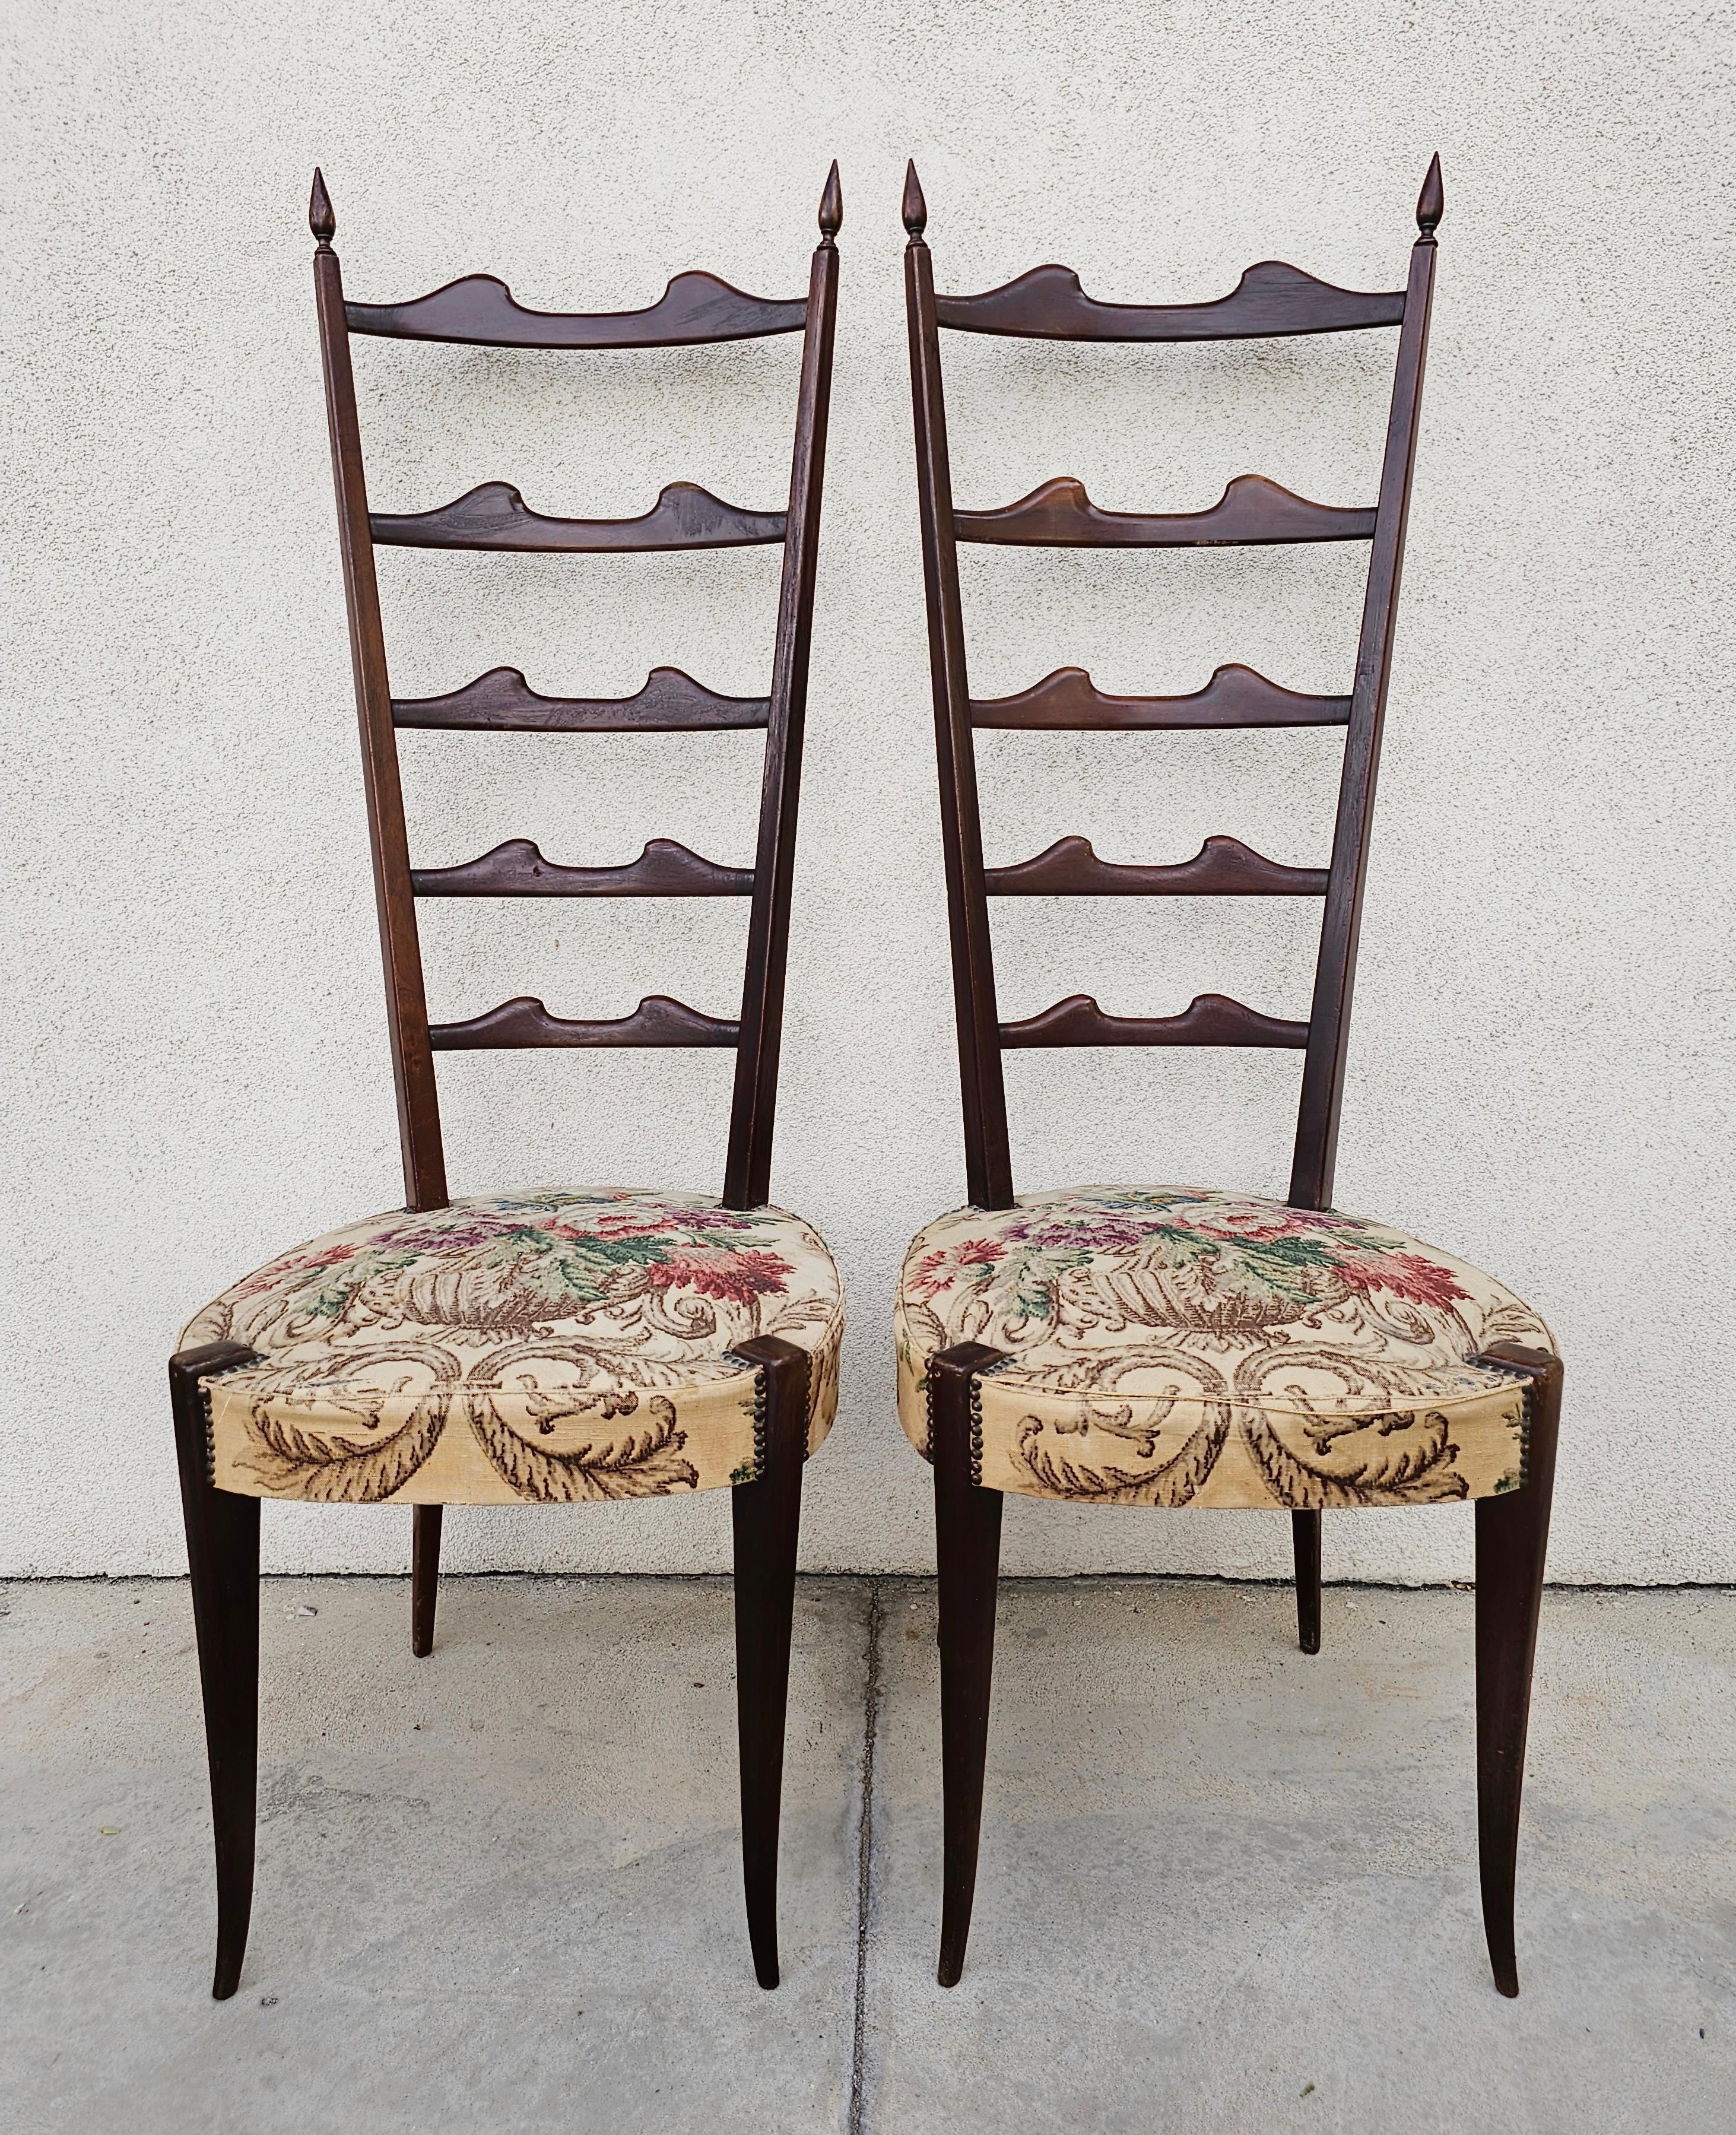 In dieser Auflistung finden Sie ein Paar Mid Century Modern High Backrest Chairs attr. zu italienischen Star des Designs, Paolo Buffa. Die Stühle sind aus dunklem Holz, wahrscheinlich Mahagoni, und mit einem geblümten Stoff gepolstert, der einige